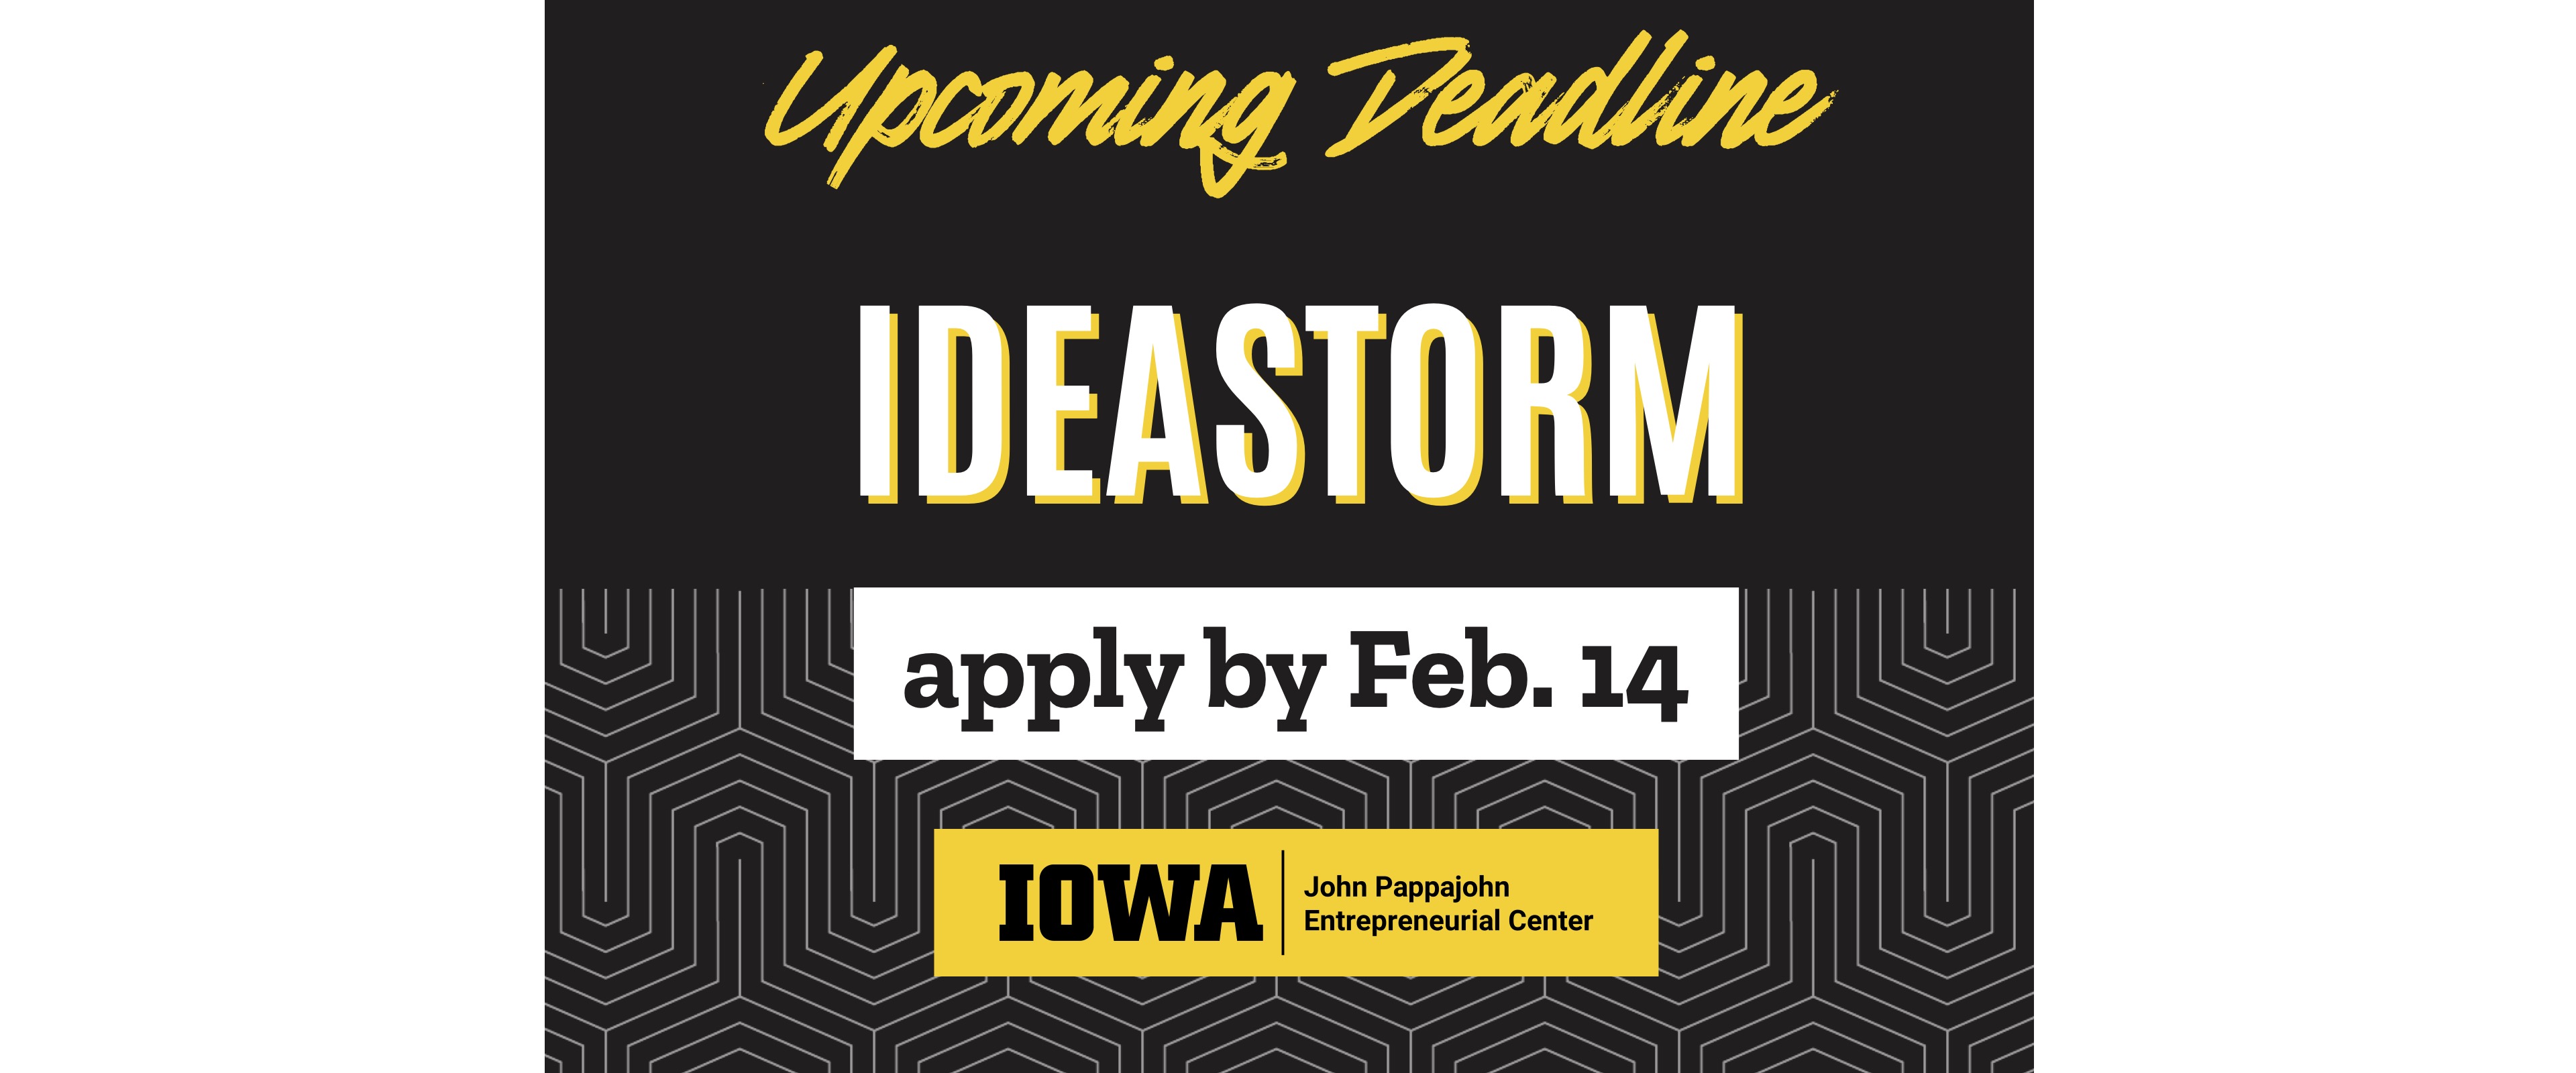 Upcoming Deadline IdeaStorm